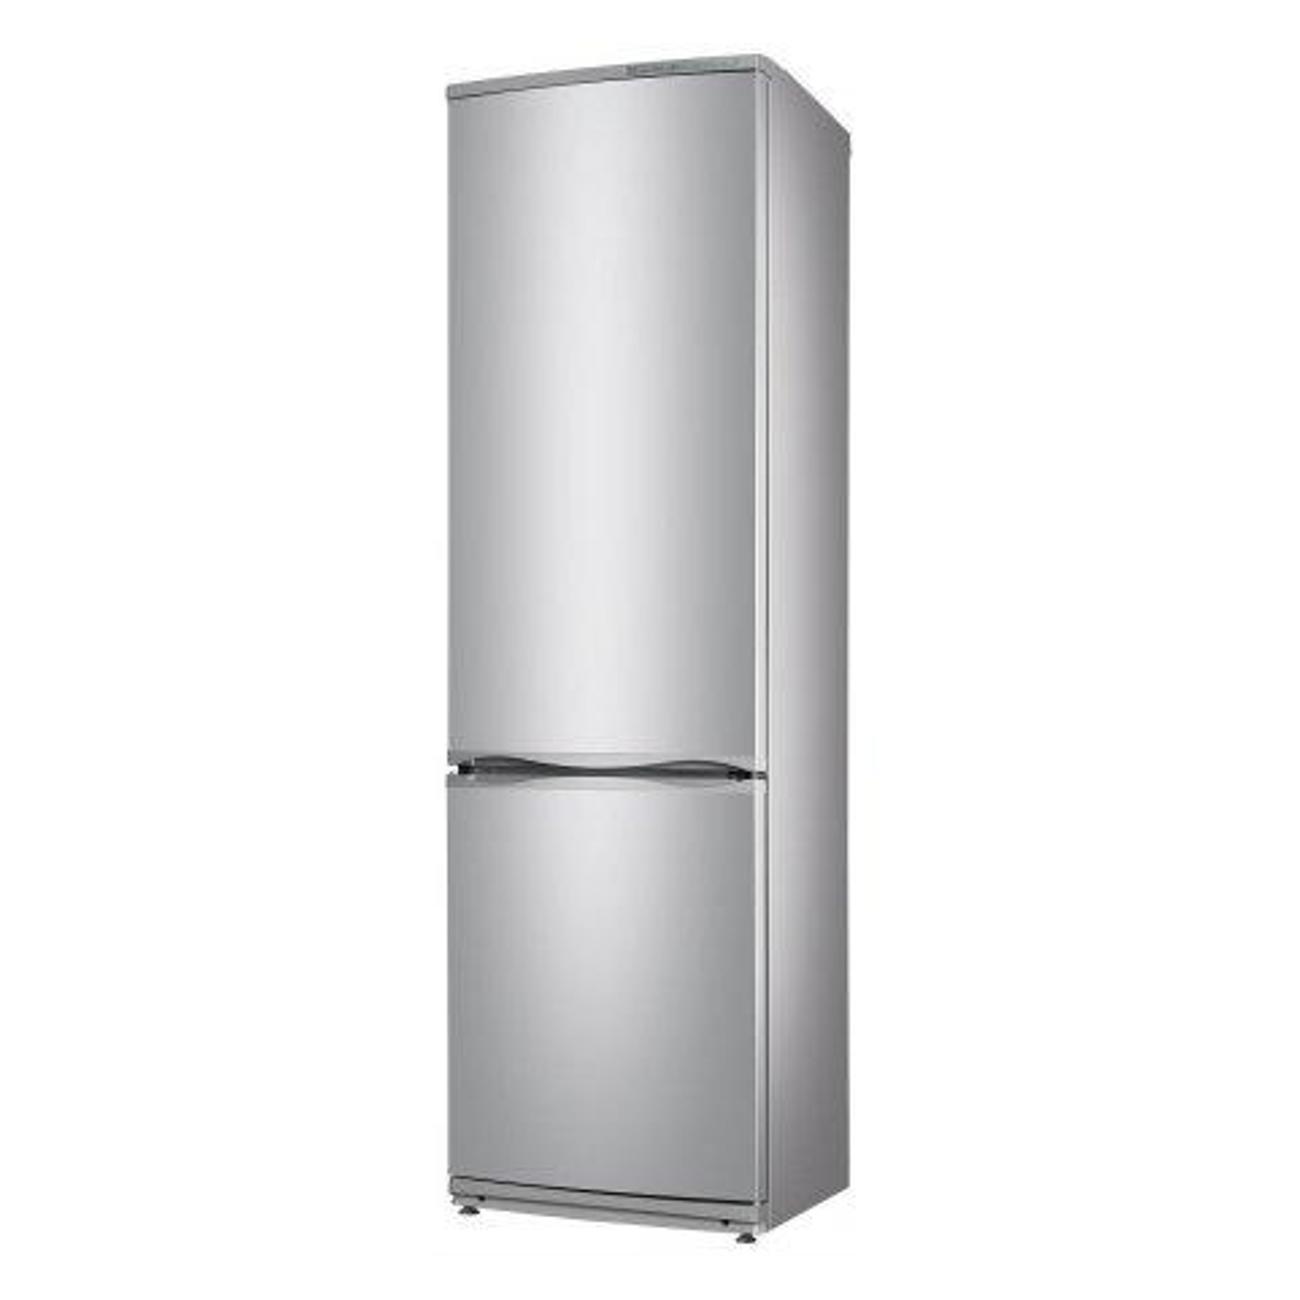 Купить новый холодильник атлант. ATLANT XM 6026-080. Холодильник Атлант хм 4625-141. Холодильник ATLANT хм 6025-060. Холодильник Атлант XM 6026-080.